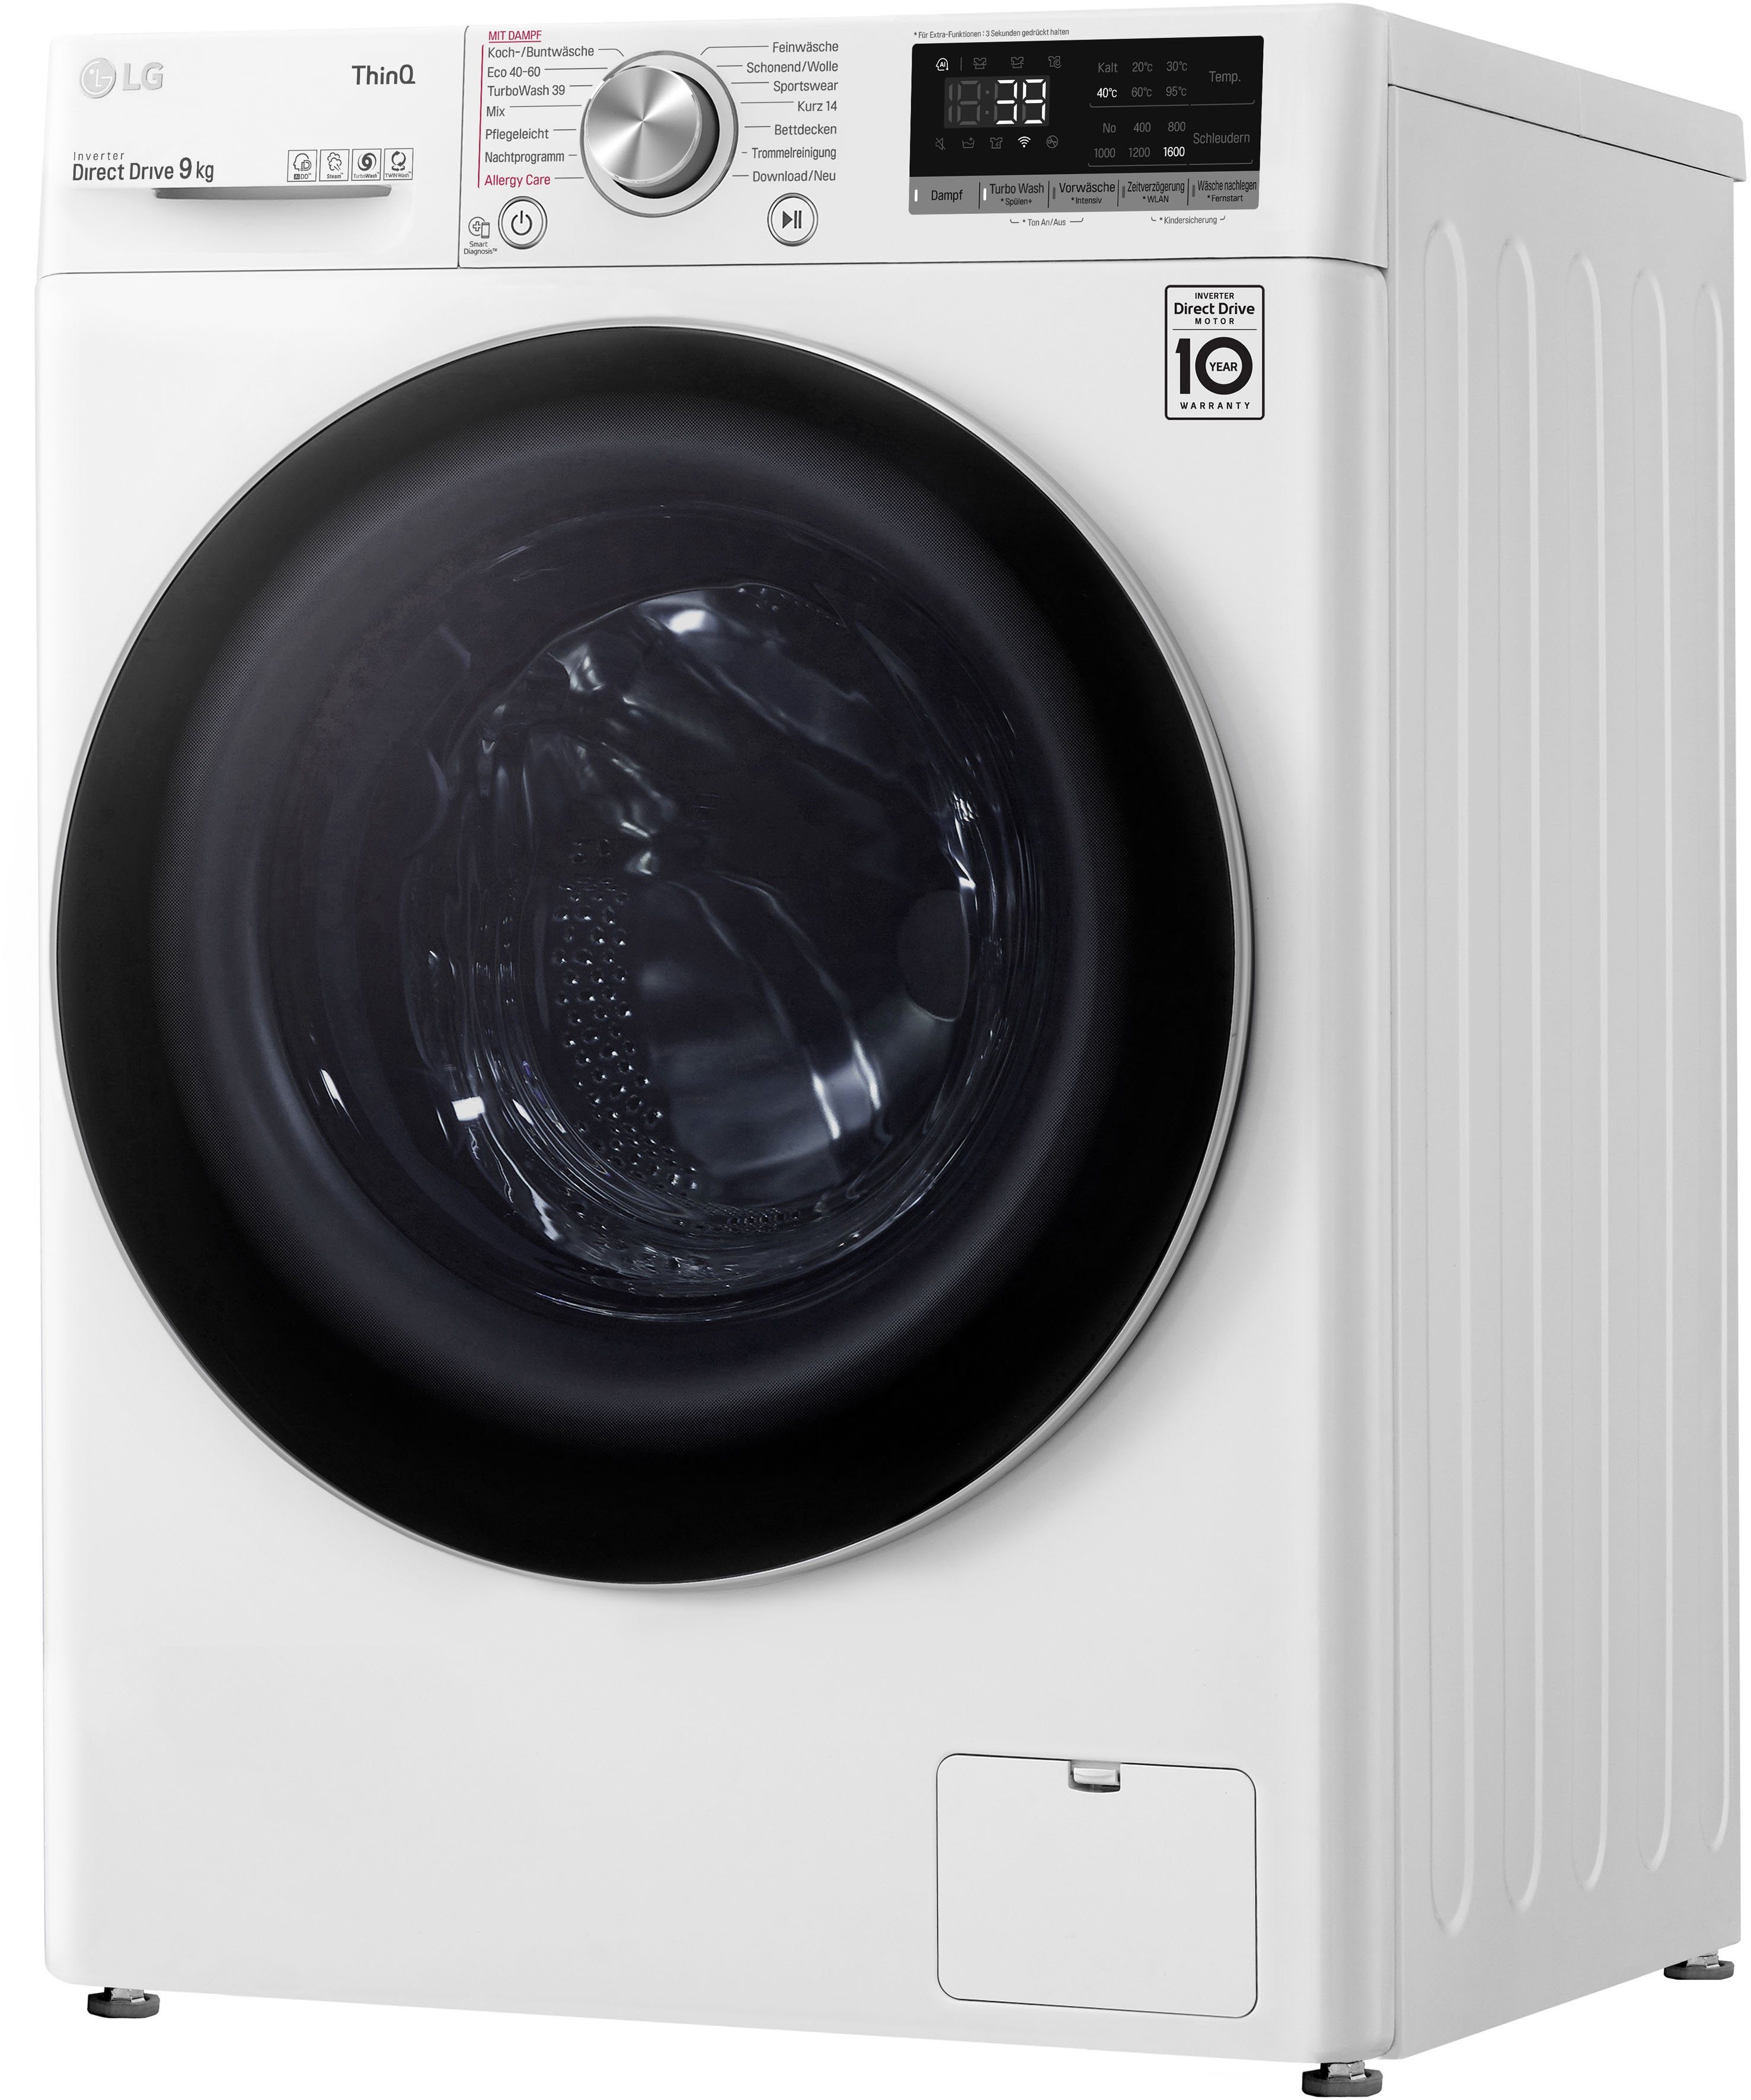 1600 Waschmaschine TurboWash® LG 39 F6WV709P1, kg, in Minuten nur Waschen U/min, 9 -